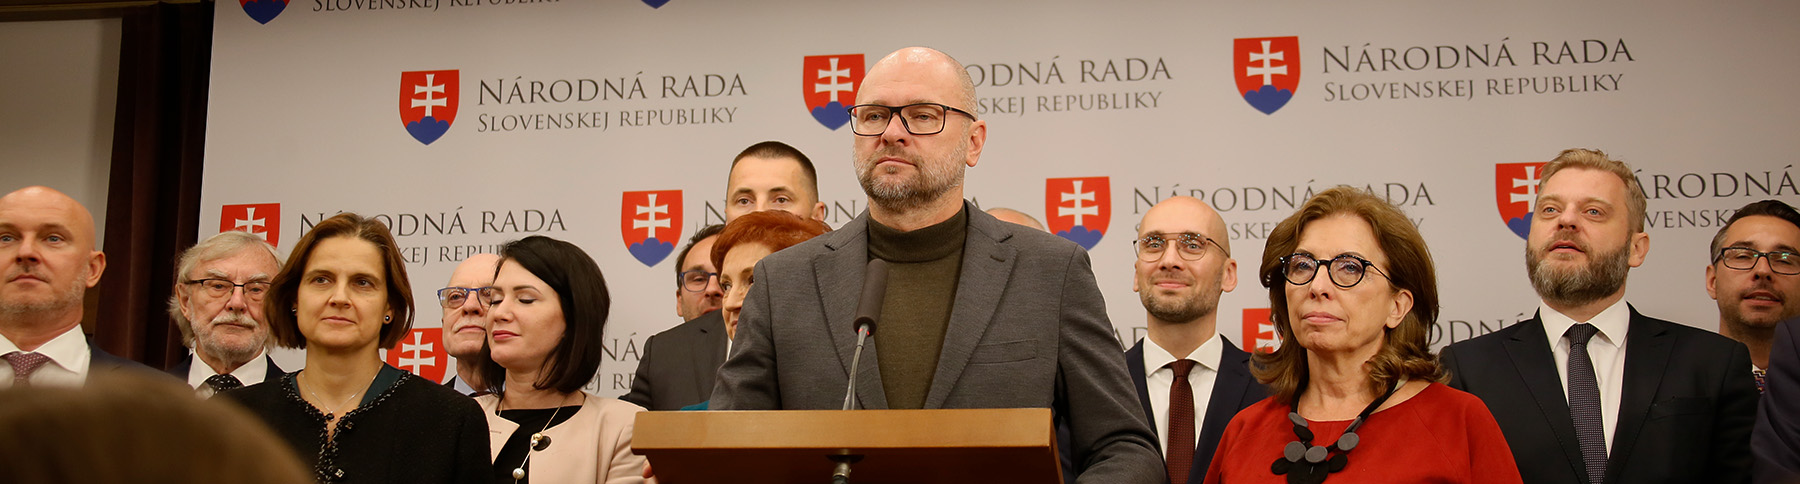 Poslanecký klub strany SaS podporí vládu Ľudovíta Ódora